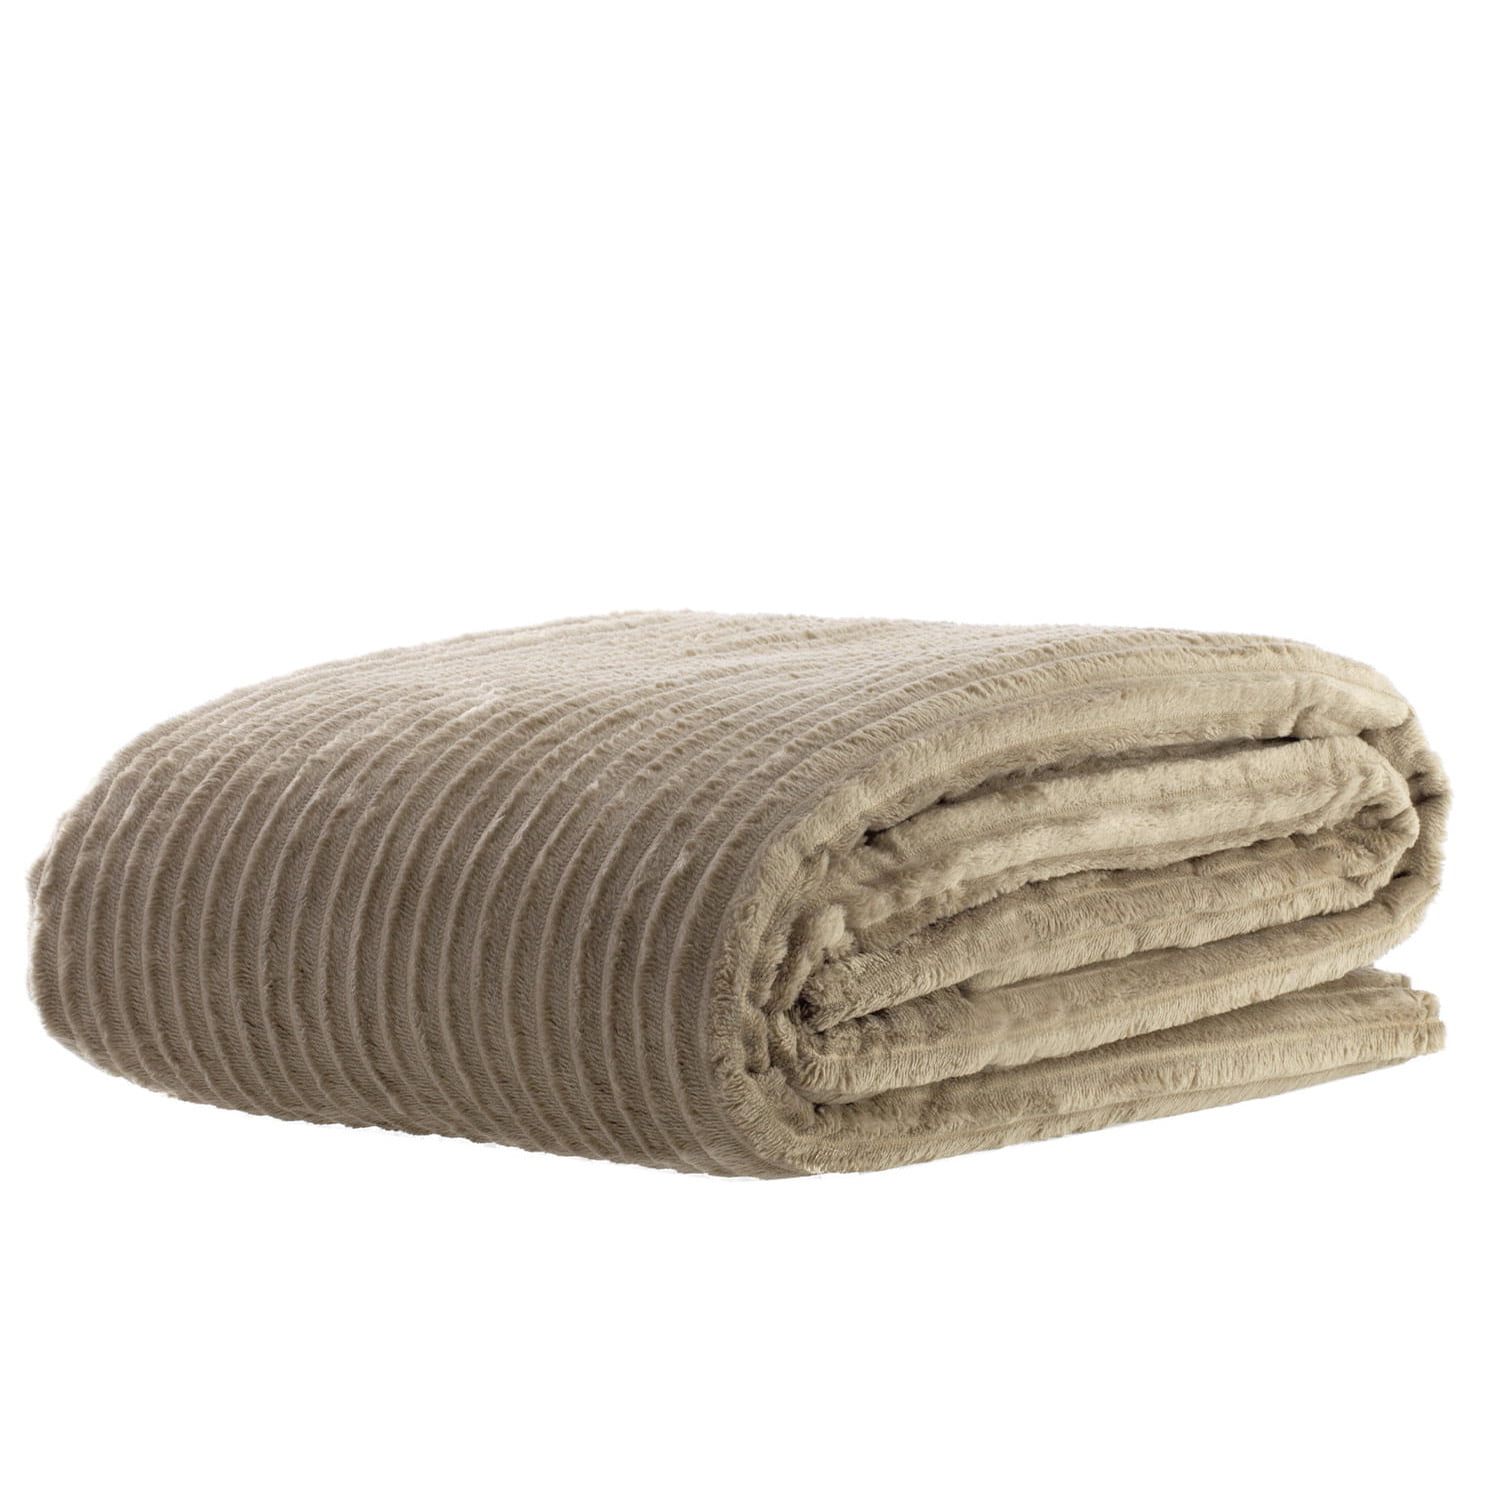 Manta Cobertor Casal Canelado Premium Londres Liso 180x220cm - Bege